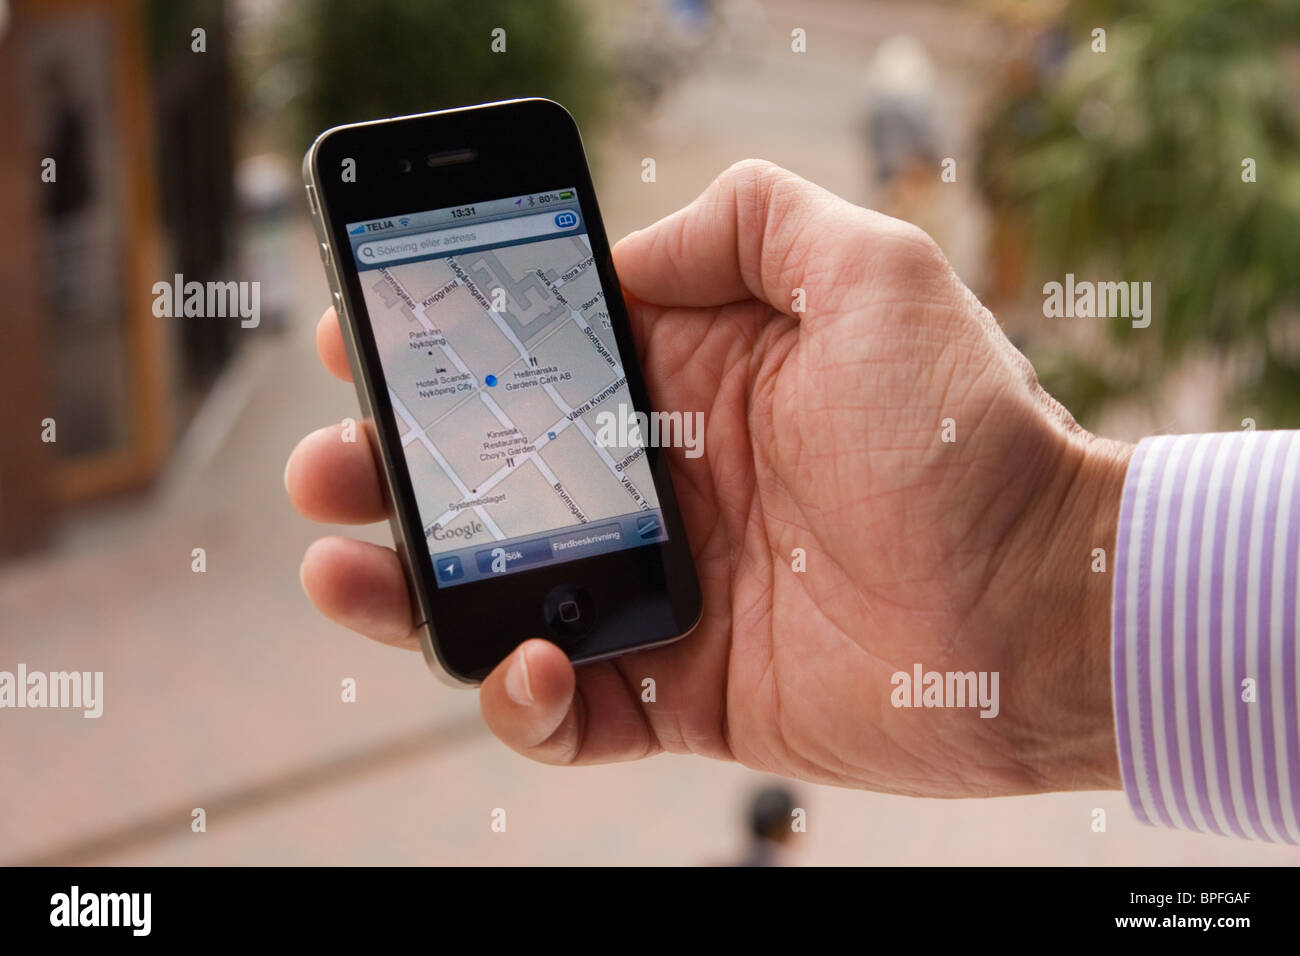 L'iPhone 4 dans la main d'un homme montrant l'application Google maps, soulignant son emplacement à Nyköping, Suède. Banque D'Images